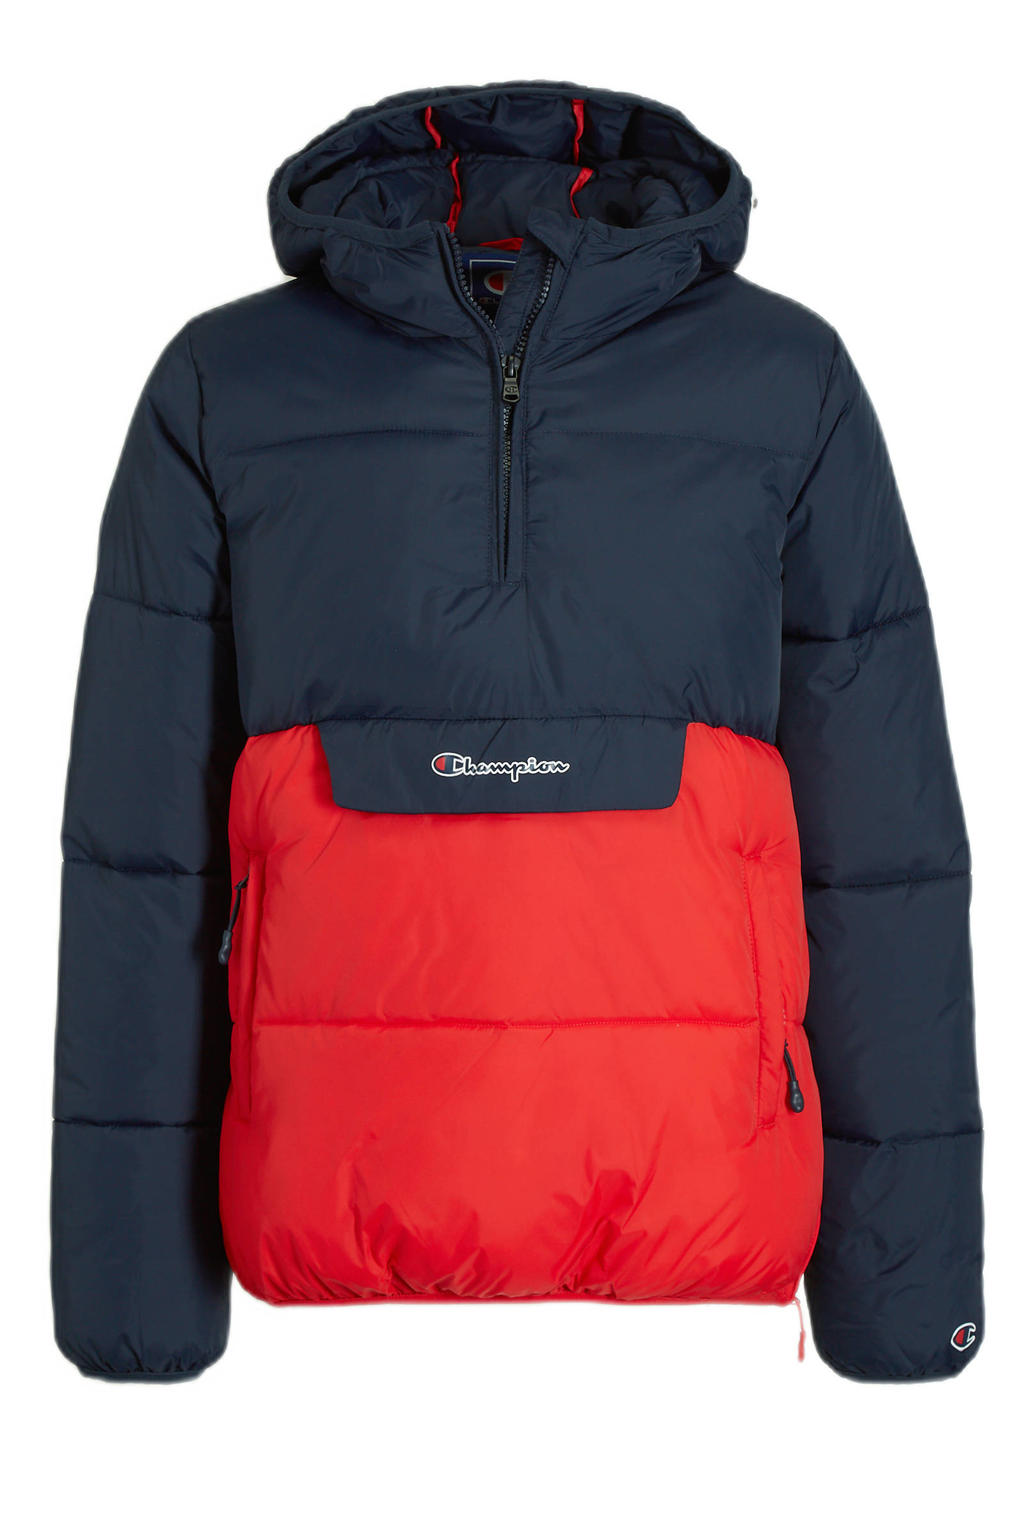 Champion gewatteerde winterjas donkerblauw/rood